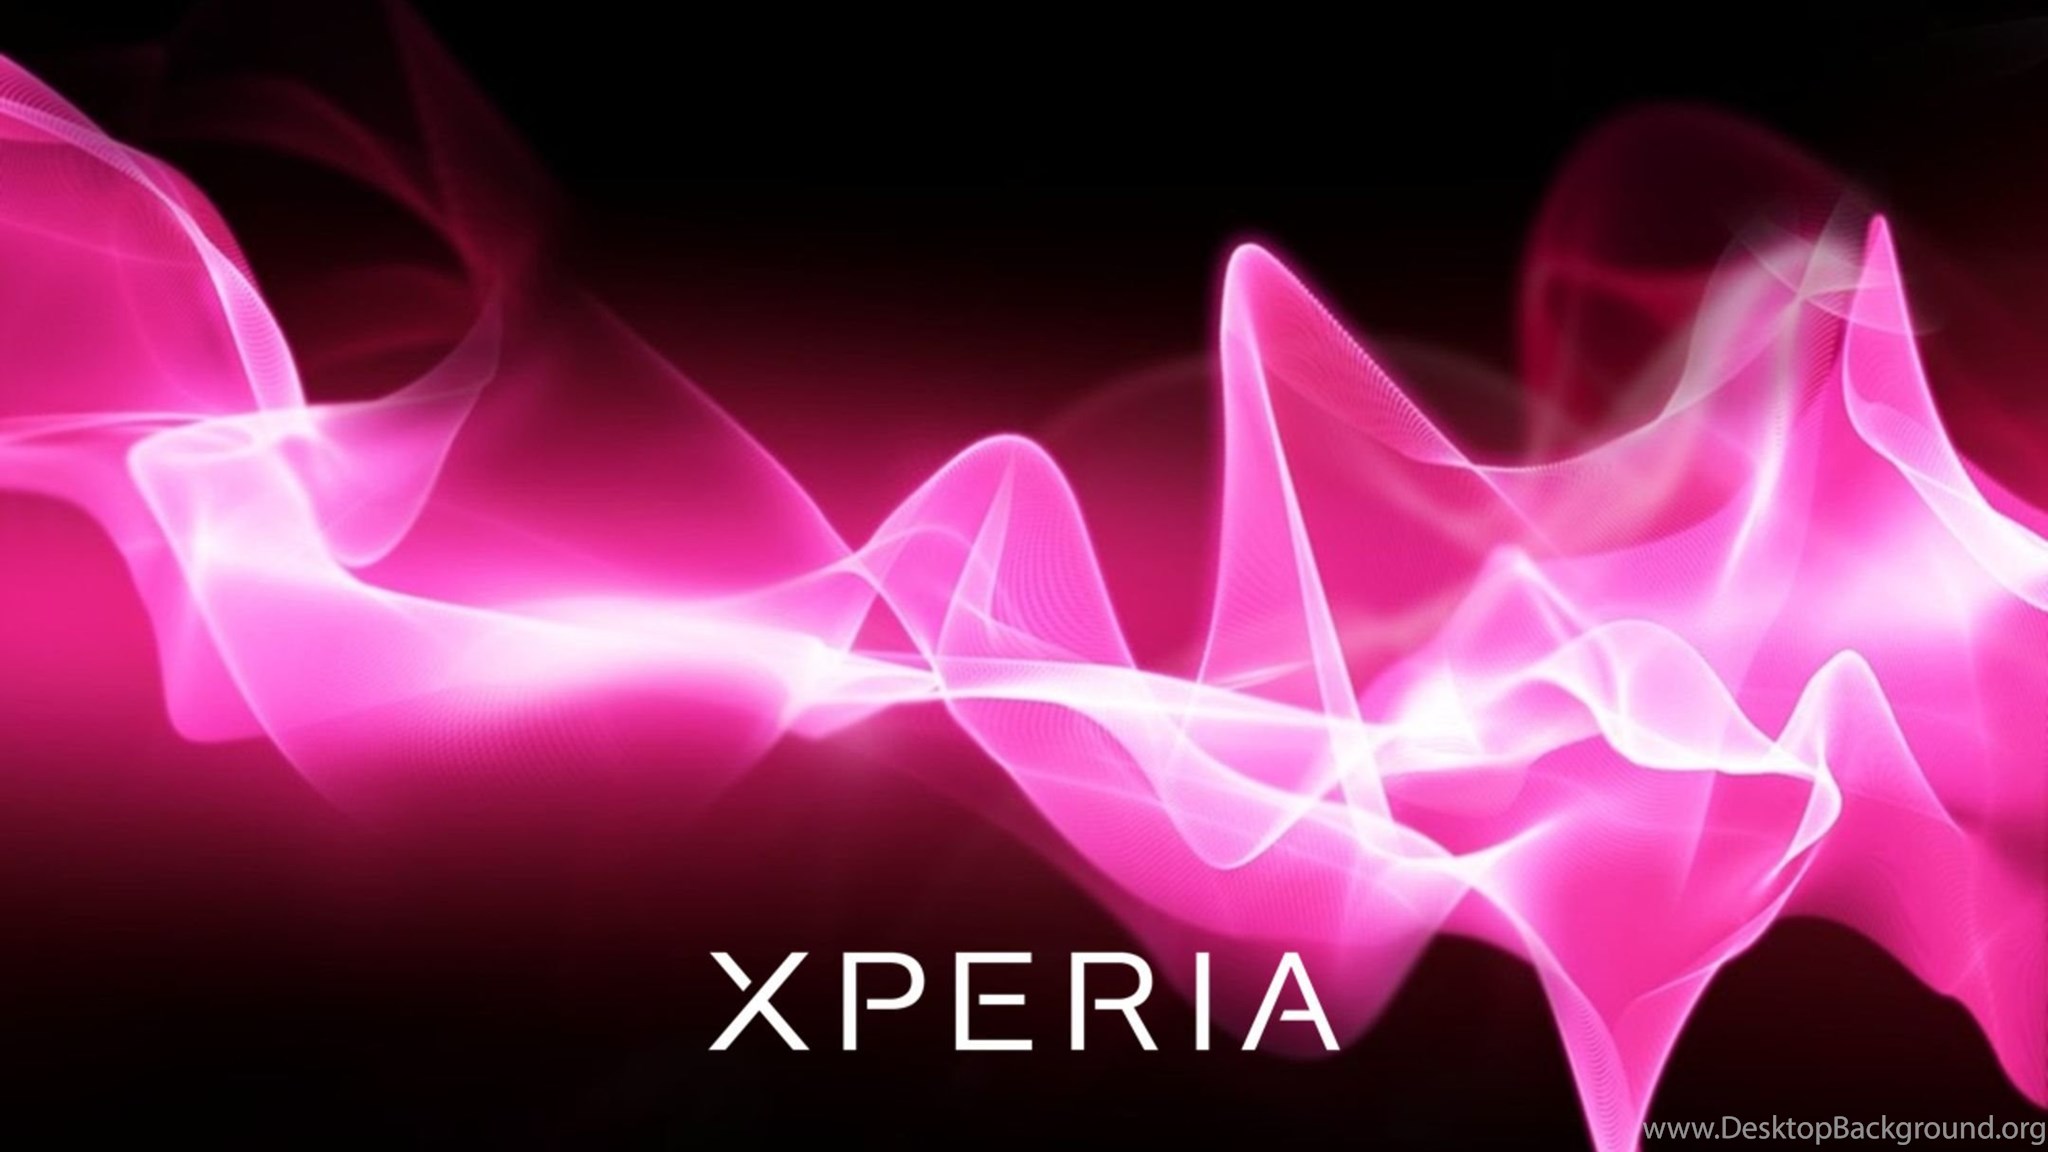 Звук xperia. Обои Sony Xperia. Фоновые рисунки Sony Xperia. Розовое свечение. Обои на телефон Sony Xperia.